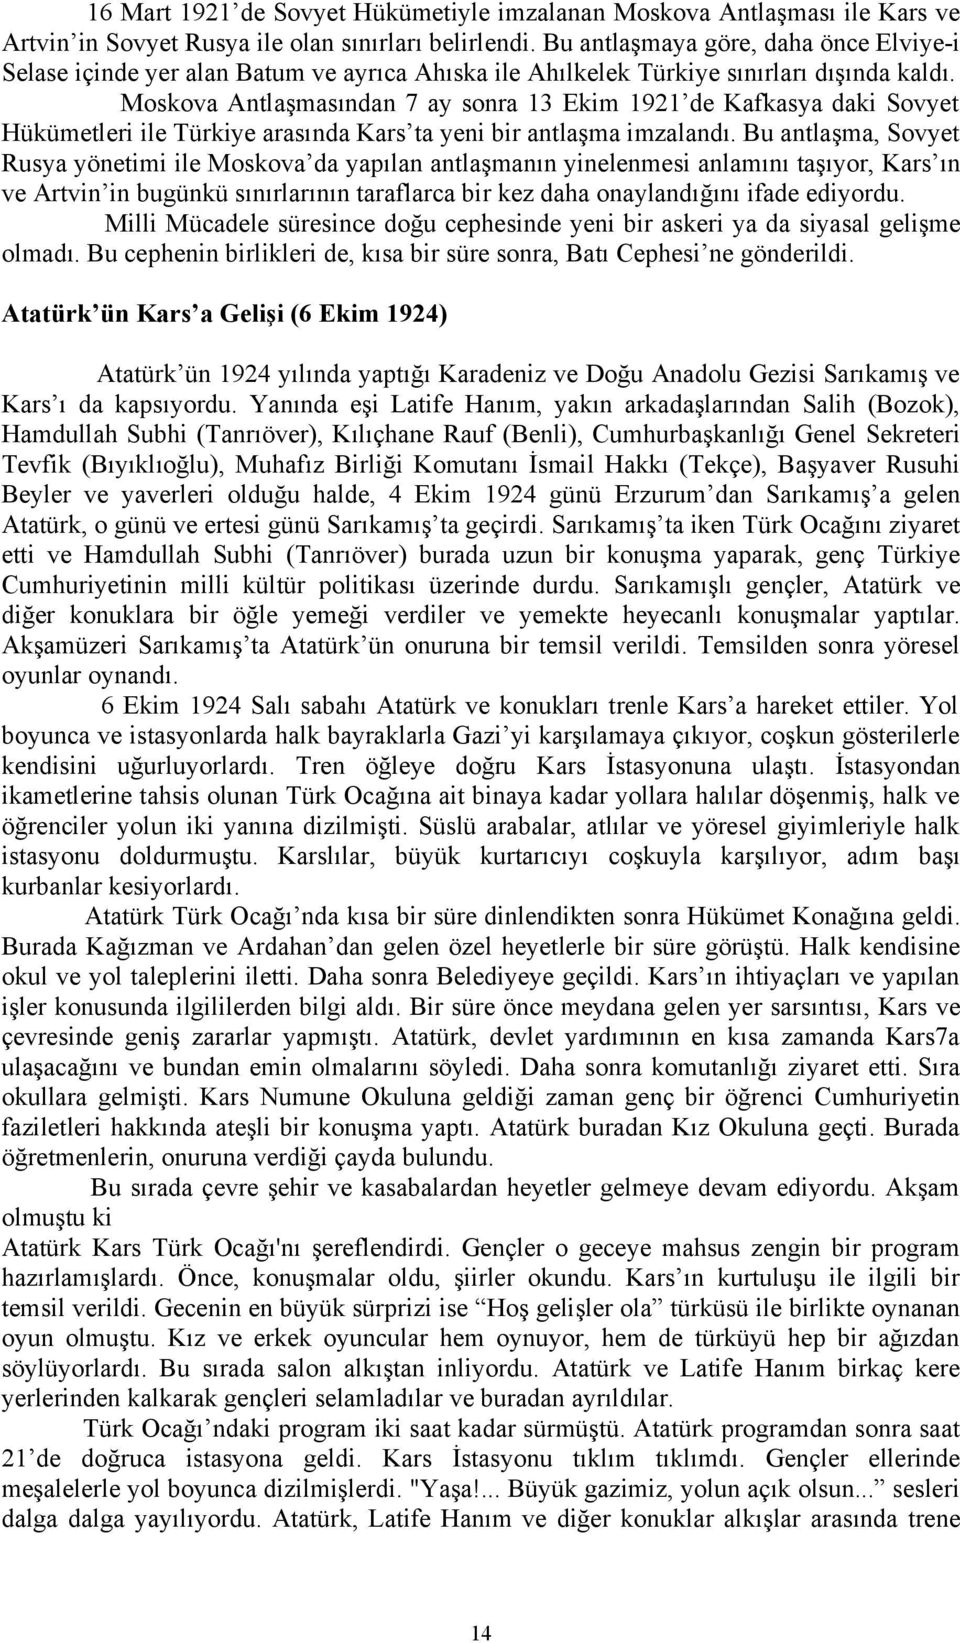 Moskova Antlaşmasından 7 ay sonra 13 Ekim 1921 de Kafkasya daki Sovyet Hükümetleri ile Türkiye arasında Kars ta yeni bir antlaşma imzalandı.